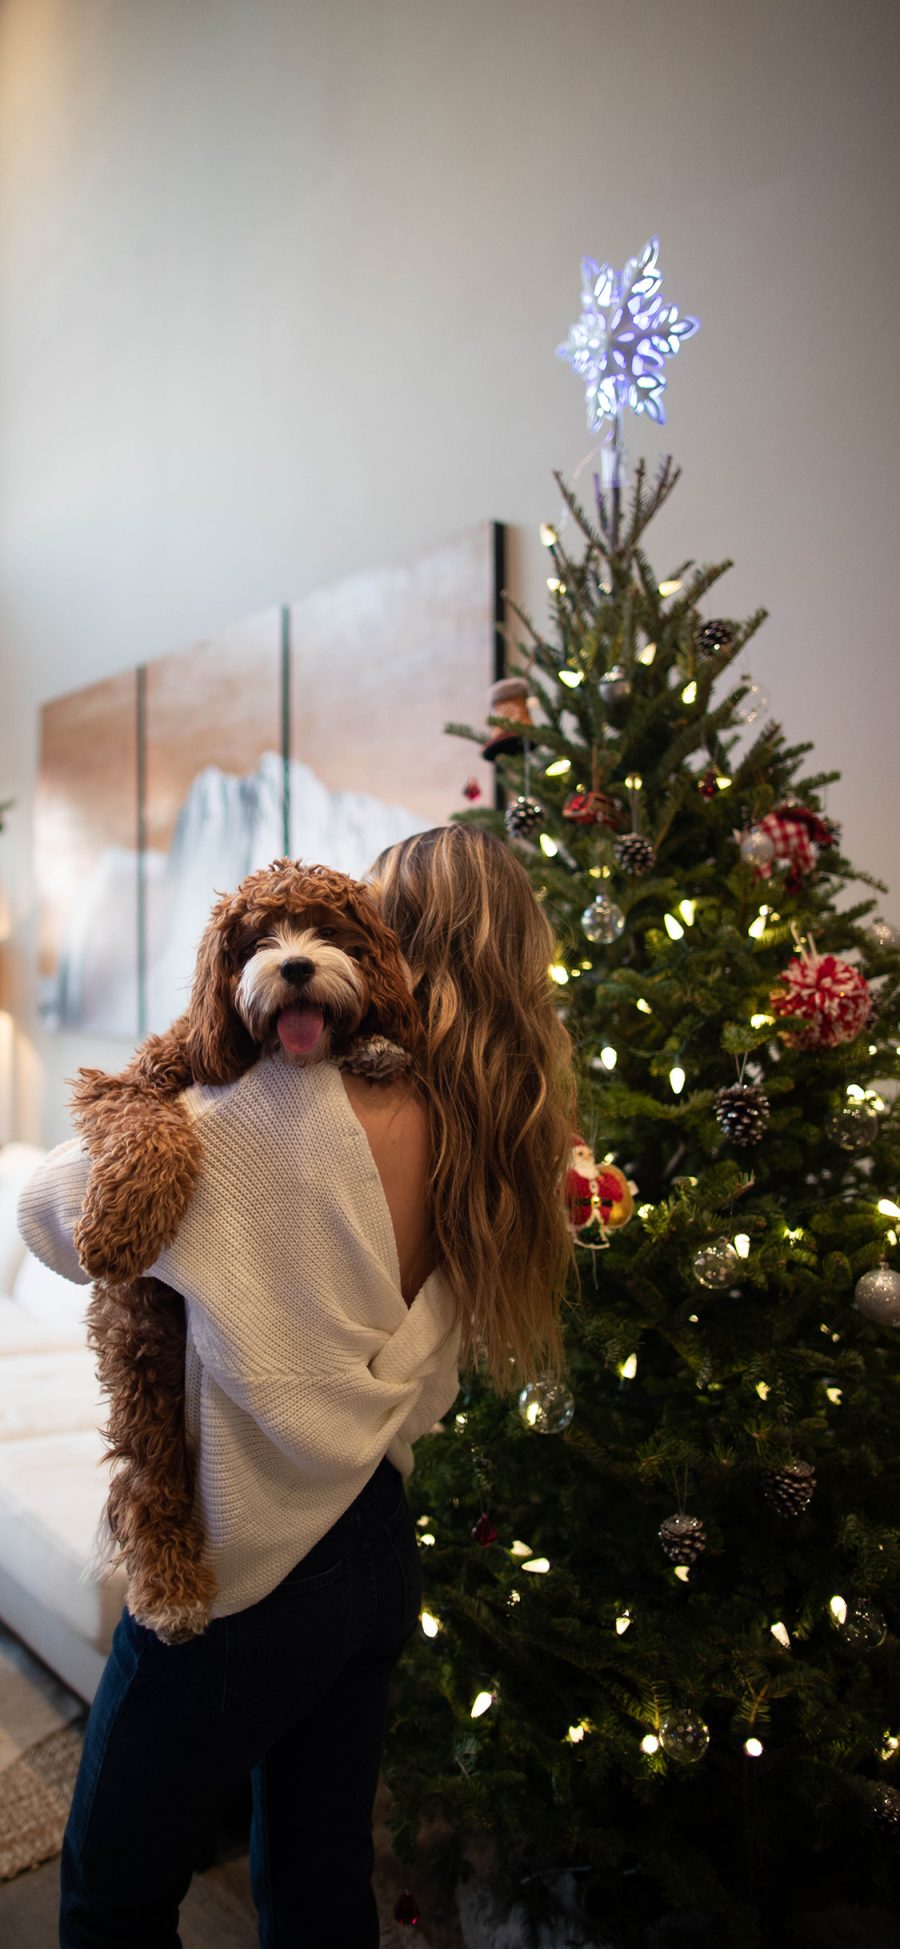 [2436×1125]家居 圣诞树 美女背影 宠物狗 苹果手机壁纸图片